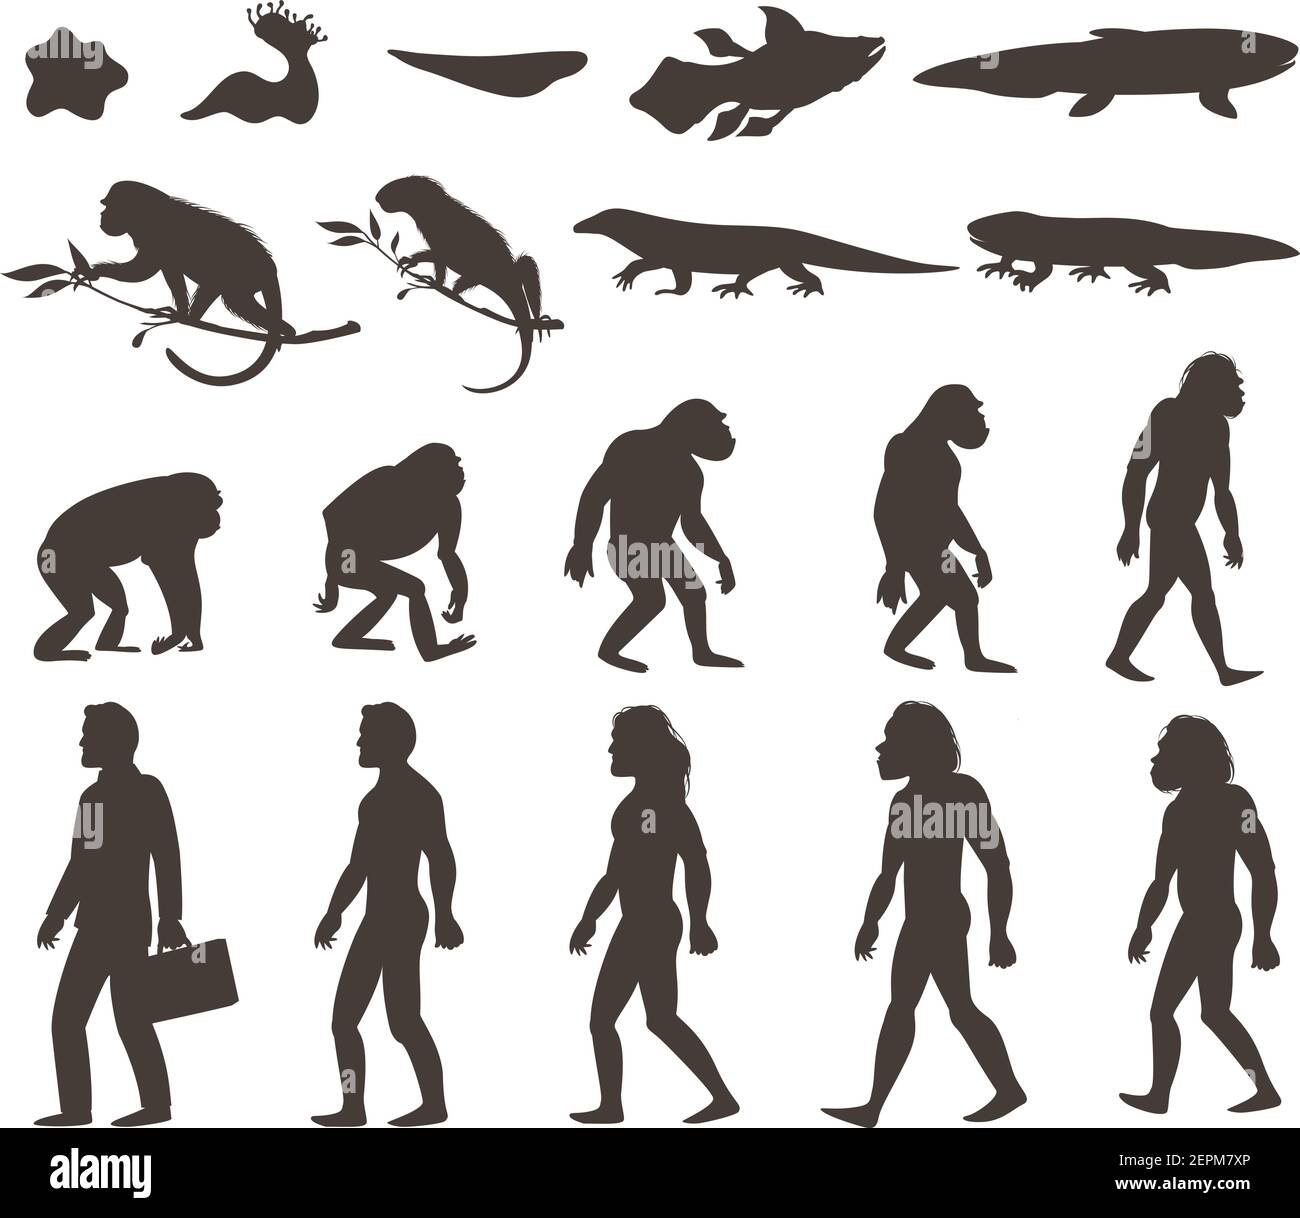 Menschliche Evolution darwin Theorie Satz von Silhouetten von Amphibien, Reptilien, Primaten und moderne Person isoliert Vektor Illustration Stock Vektor